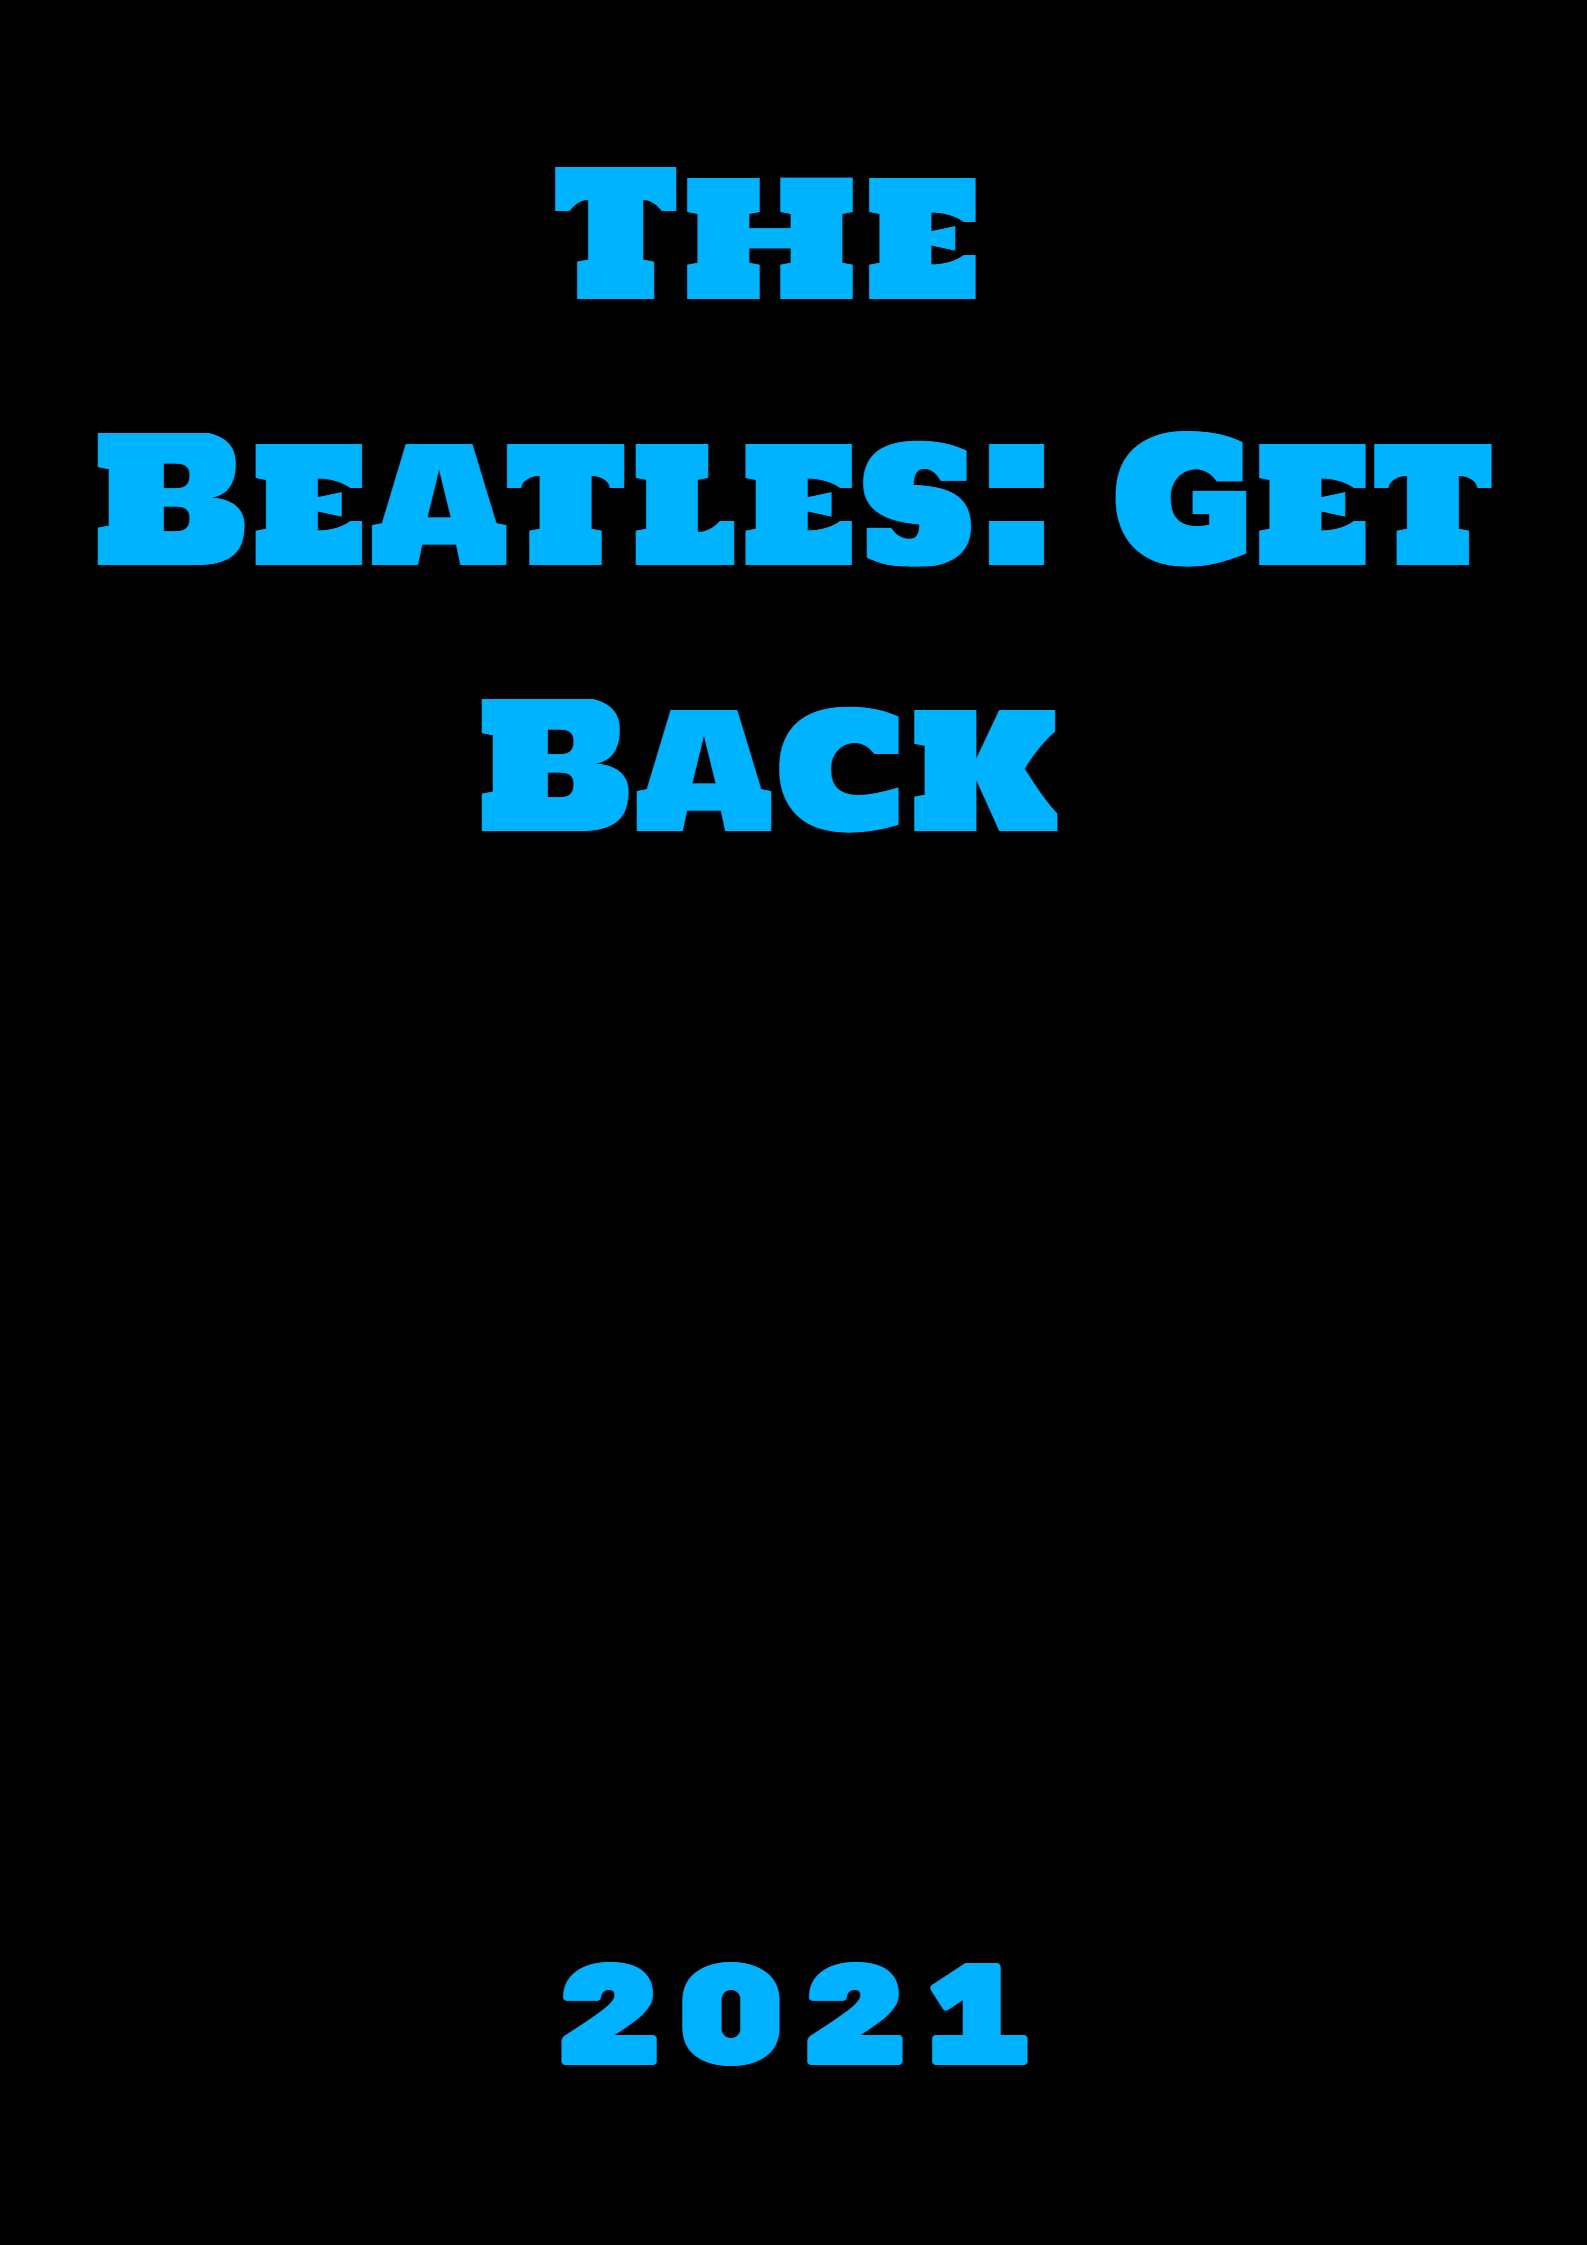  فیلم سینمایی The Beatles: Get Back به کارگردانی پیتر جکسون